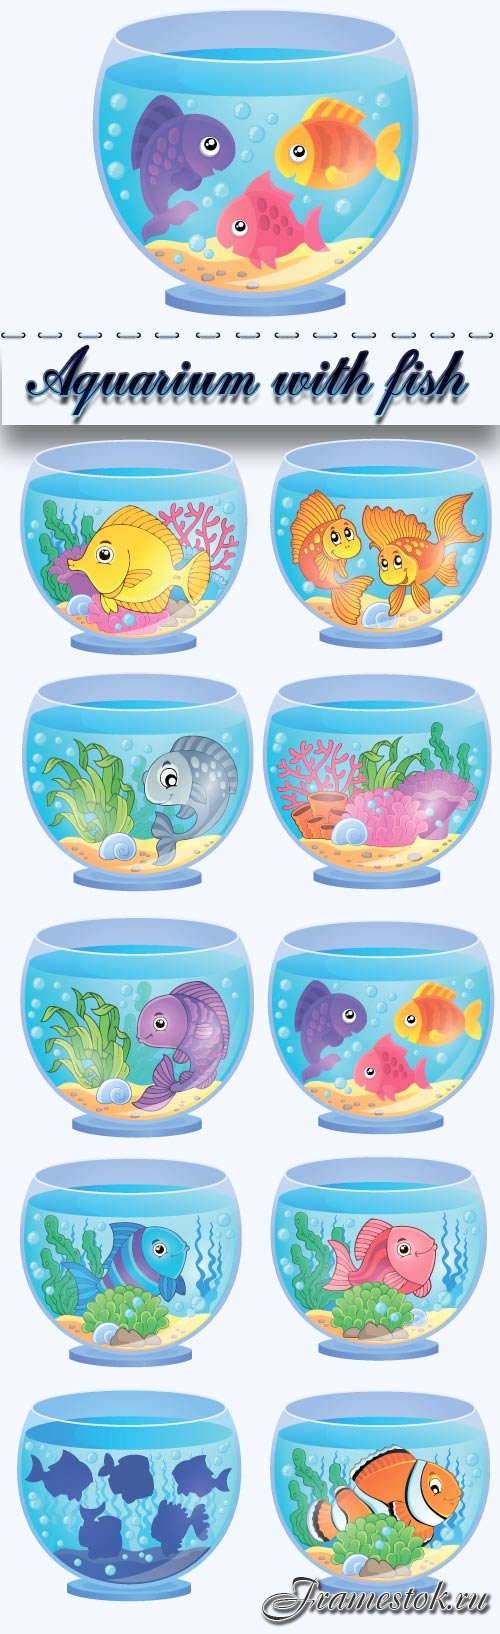 Aquarium with fish cartoon vector